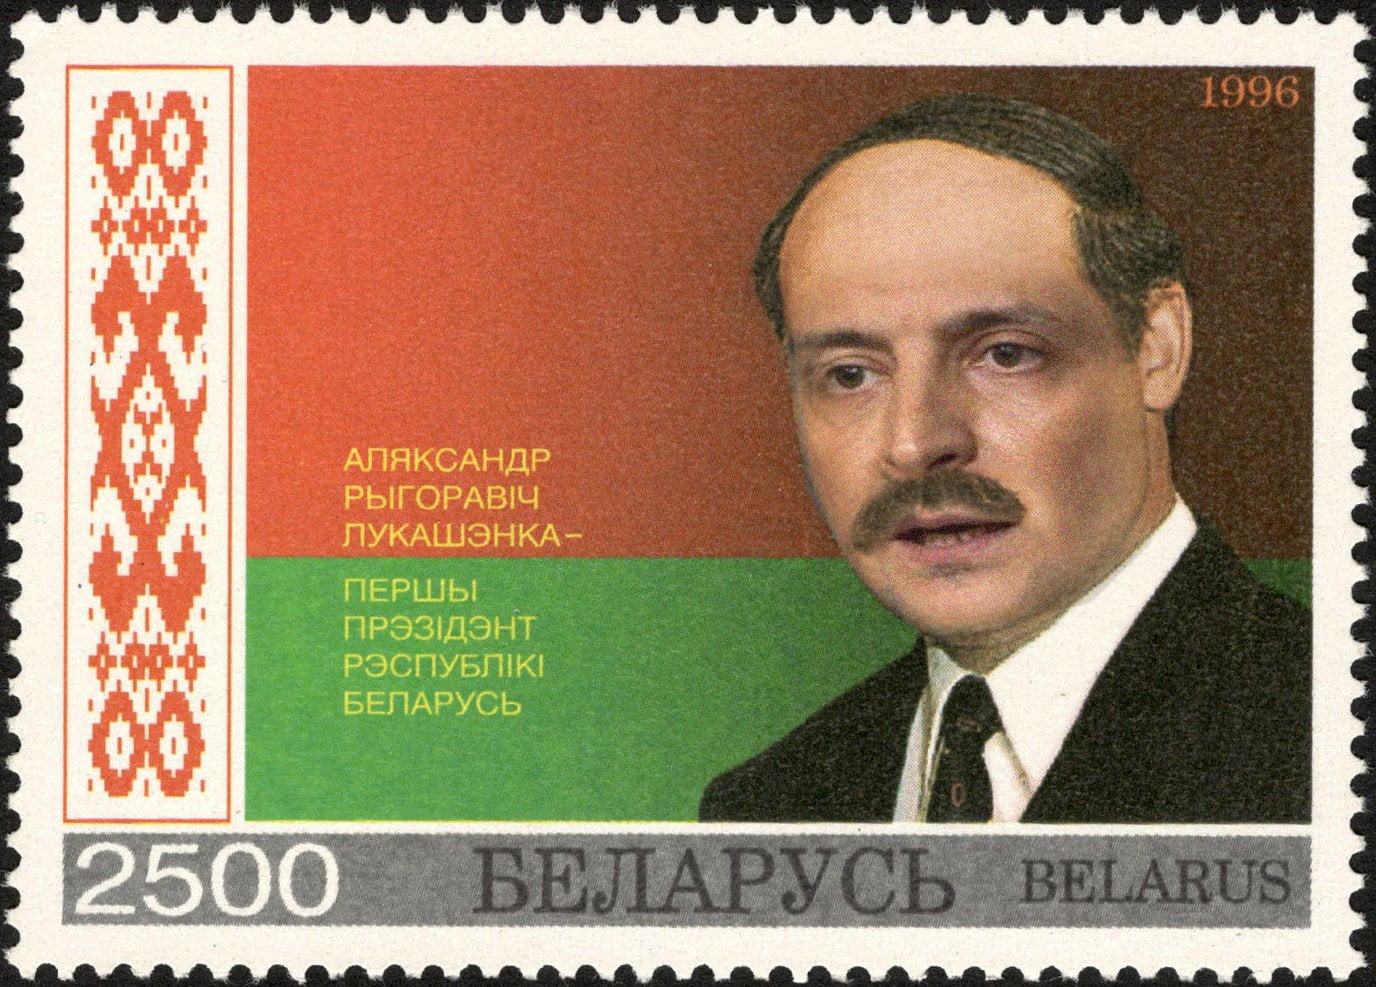 Зеленському радимо не захоплюватись методами Лукашенка - Європейська Солідарність 2